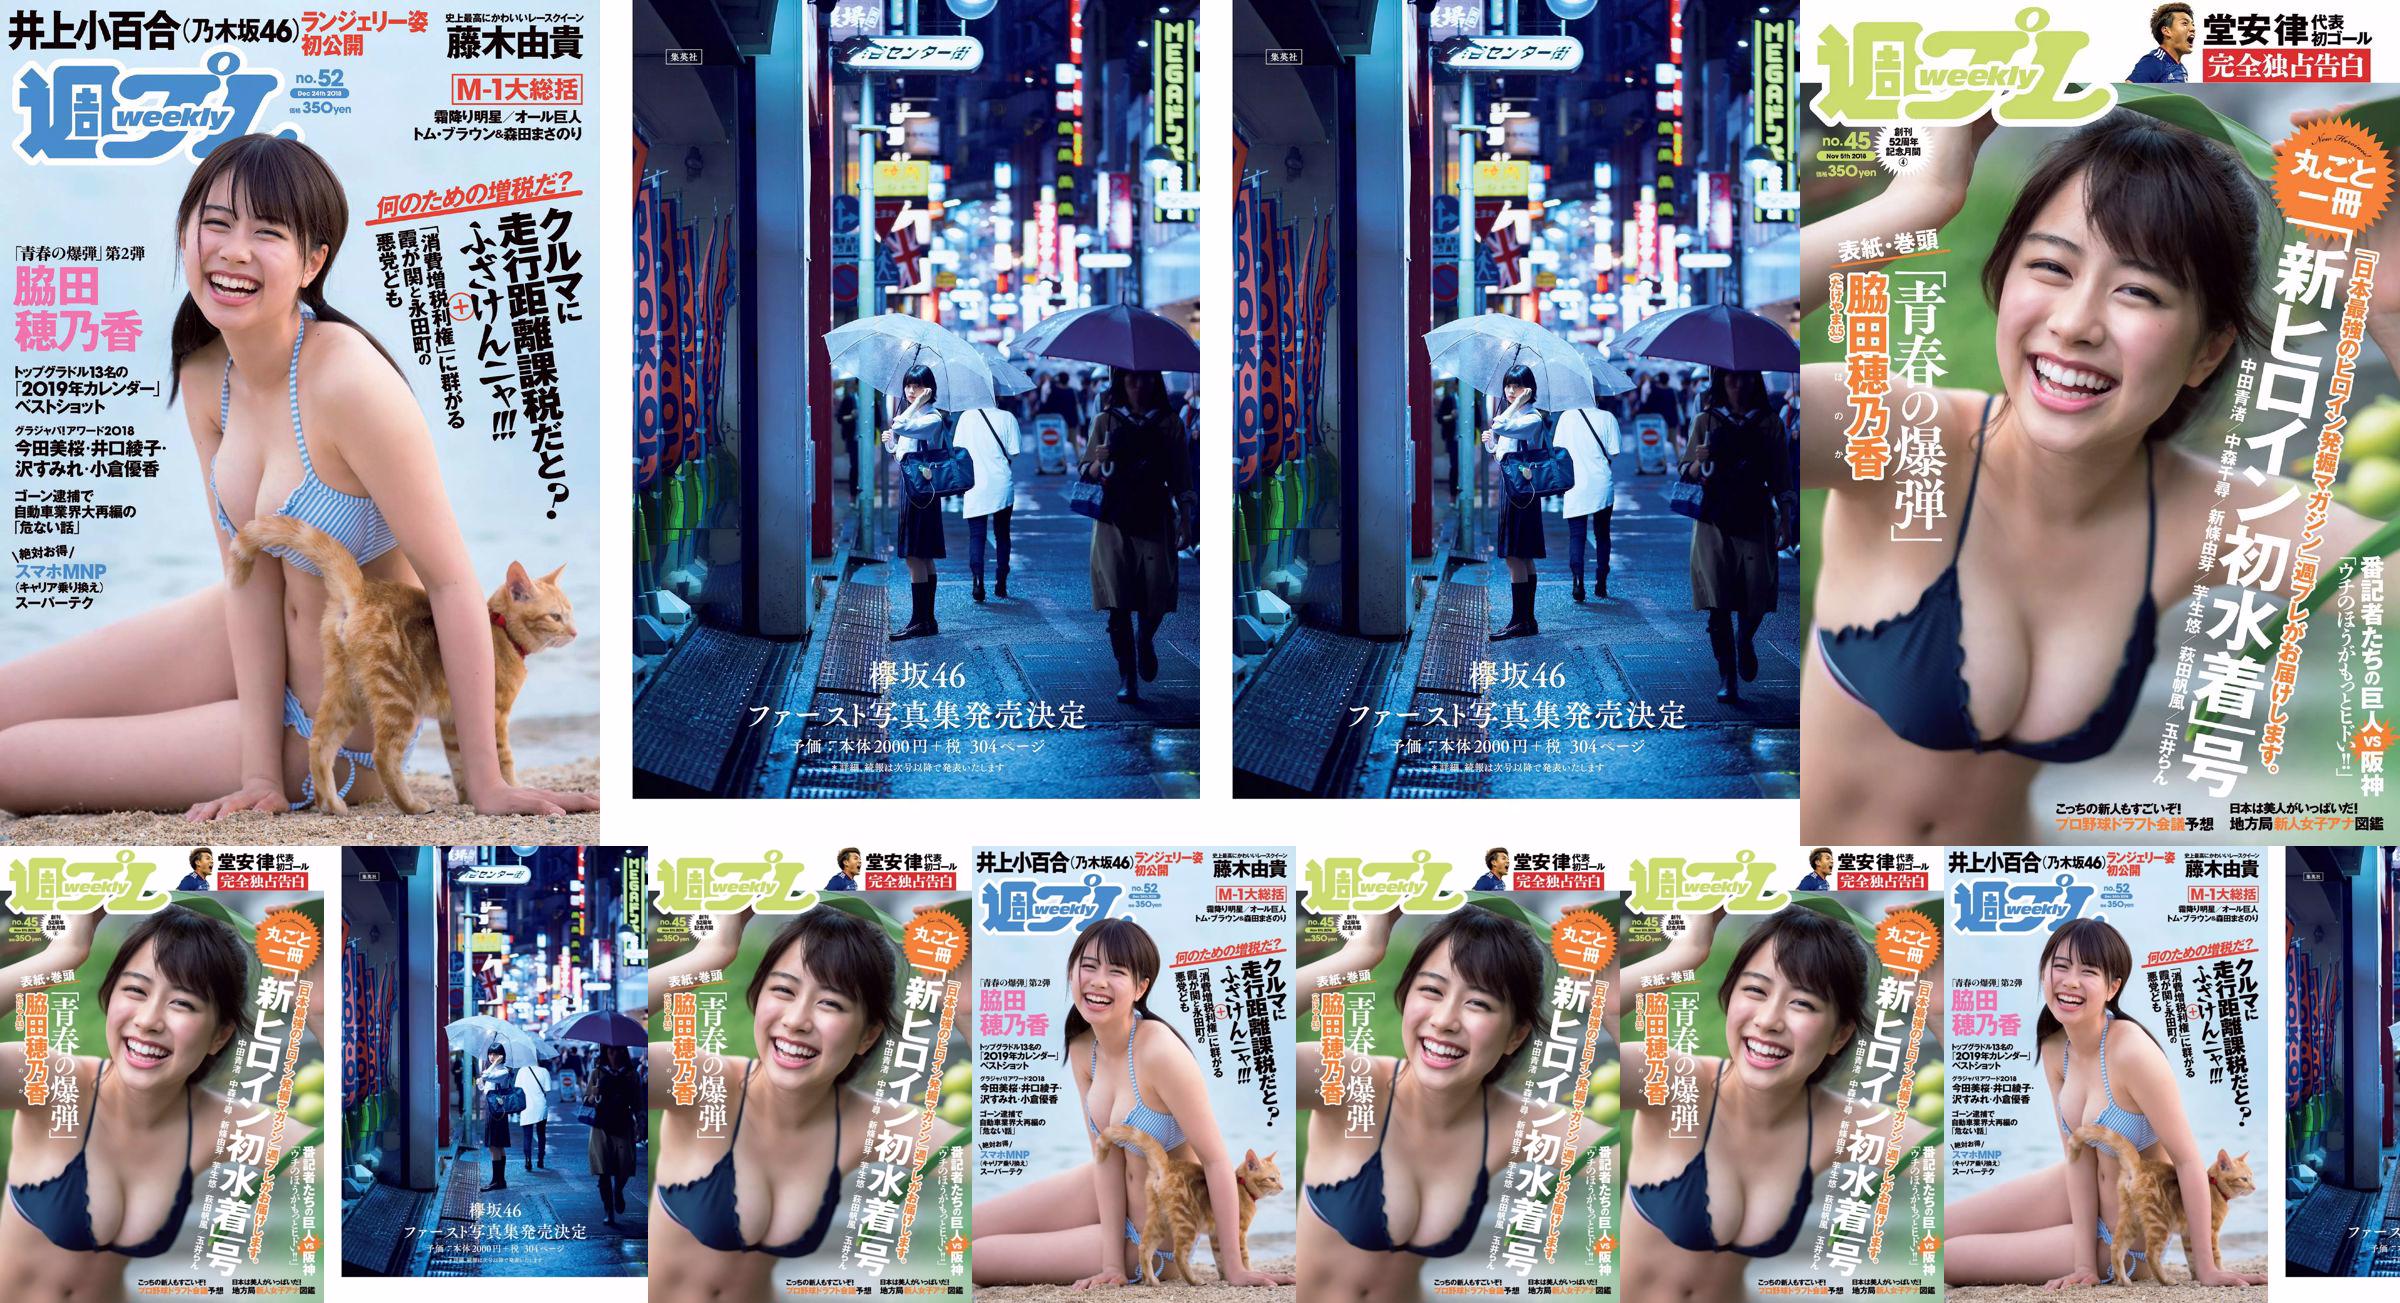 Wakada Honoka, Inoue Sayuri, Mizusawa Yuno, Fujiki Yuki, Koizumi Haruka, Kaito みらい, Tachiki Ayano [Weekly Playboy] นิตยสารภาพถ่ายฉบับที่ 52 ประจำปี 2018 No.adf9e5 หน้า 2